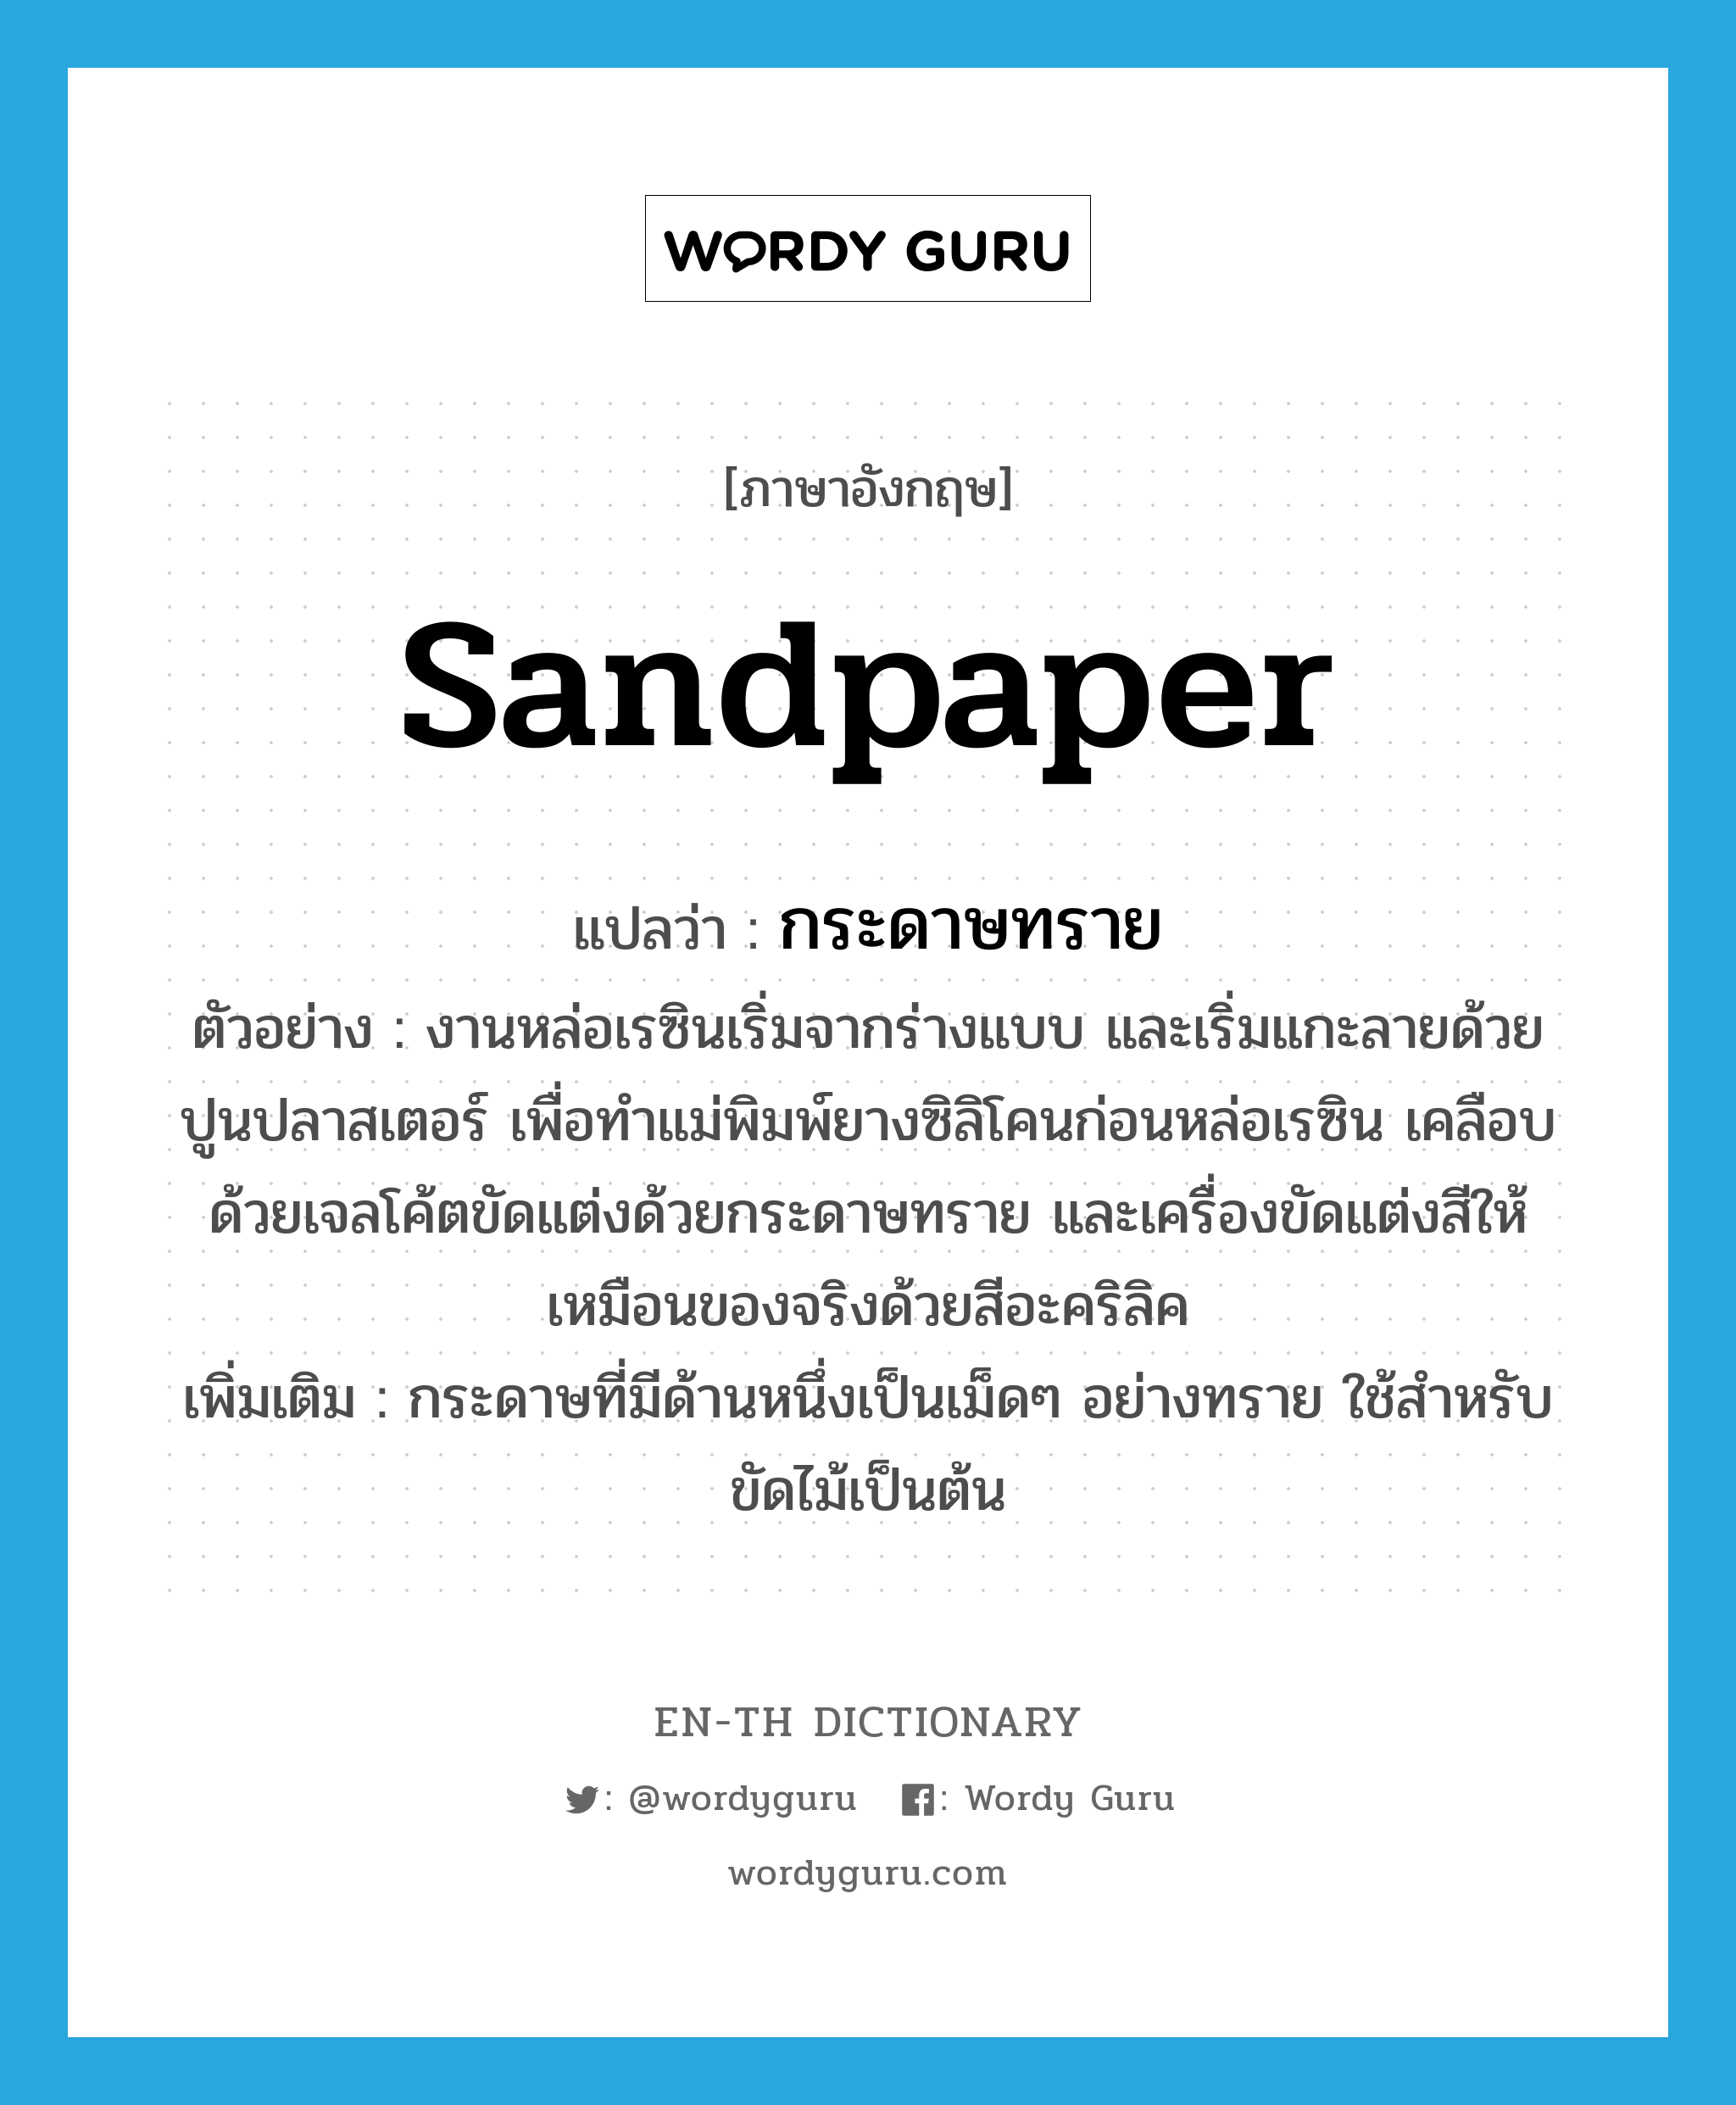 sandpaper แปลว่า?, คำศัพท์ภาษาอังกฤษ sandpaper แปลว่า กระดาษทราย ประเภท N ตัวอย่าง งานหล่อเรซินเริ่มจากร่างแบบ และเริ่มแกะลายด้วยปูนปลาสเตอร์ เพื่อทำแม่พิมพ์ยางซิลิโคนก่อนหล่อเรซิน เคลือบด้วยเจลโค้ตขัดแต่งด้วยกระดาษทราย และเครื่องขัดแต่งสีให้เหมือนของจริงด้วยสีอะคริลิค เพิ่มเติม กระดาษที่มีด้านหนึ่งเป็นเม็ดๆ อย่างทราย ใช้สำหรับขัดไม้เป็นต้น หมวด N